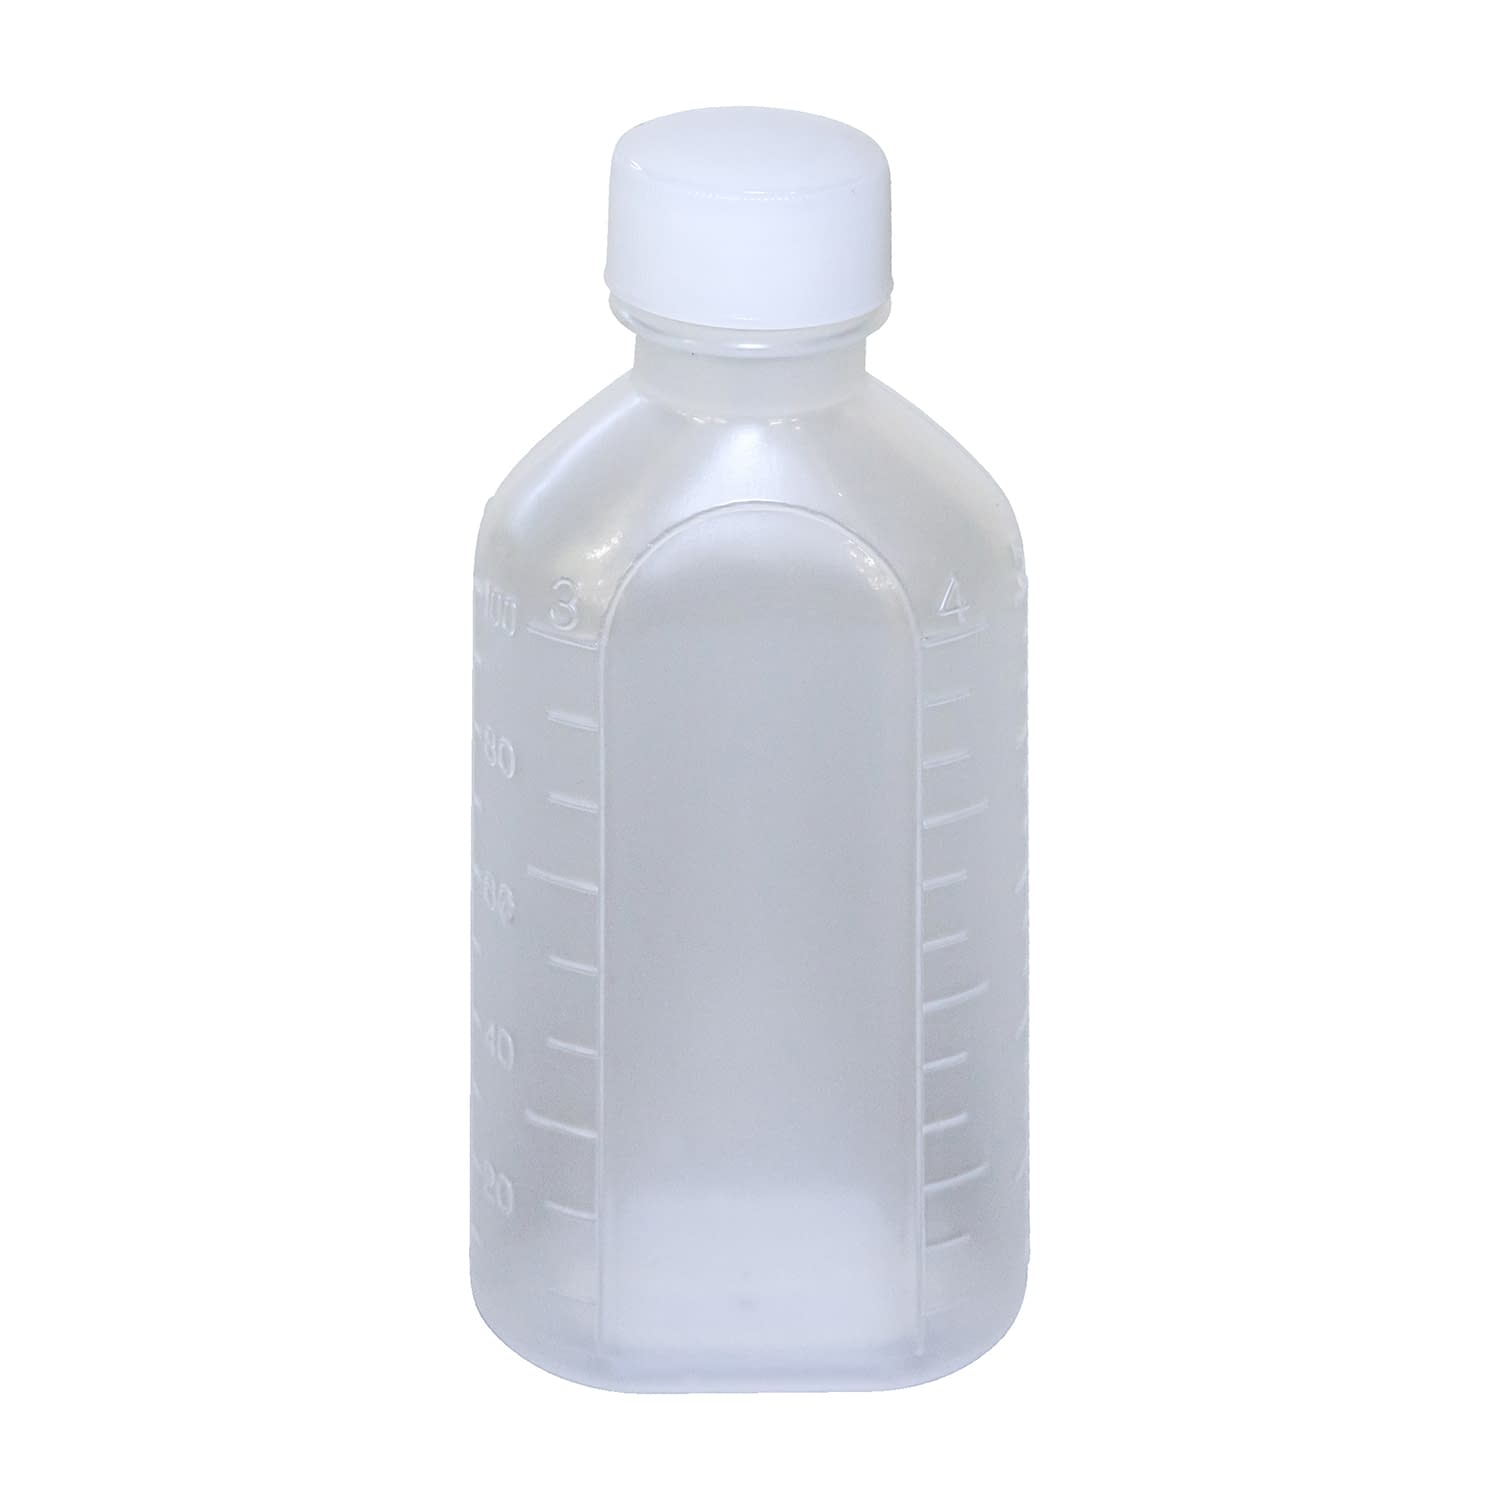 投薬瓶ＰＰＢ（滅菌済） 100CC(10ﾎﾝX20ﾌｸﾛｲﾘ) キャップ：白ＰＥ（基本色）100cc白（基本色）・PE【エムアイケミカル】FALSE(08-2855-03-01)